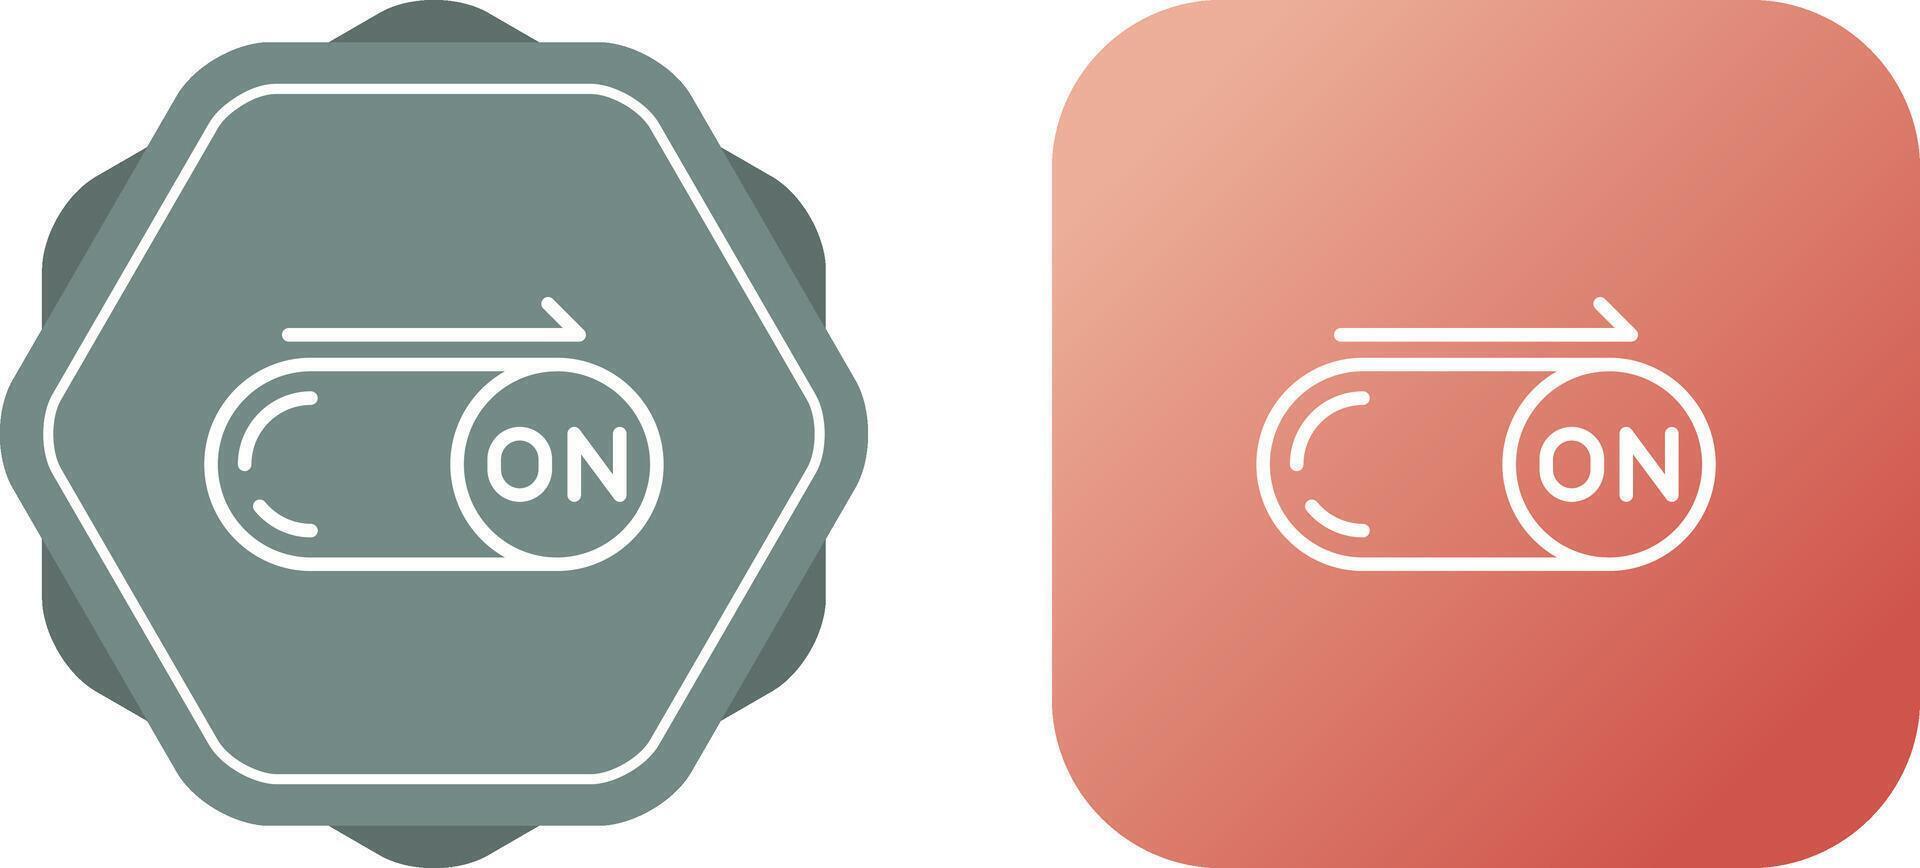 On Button Vector Icon